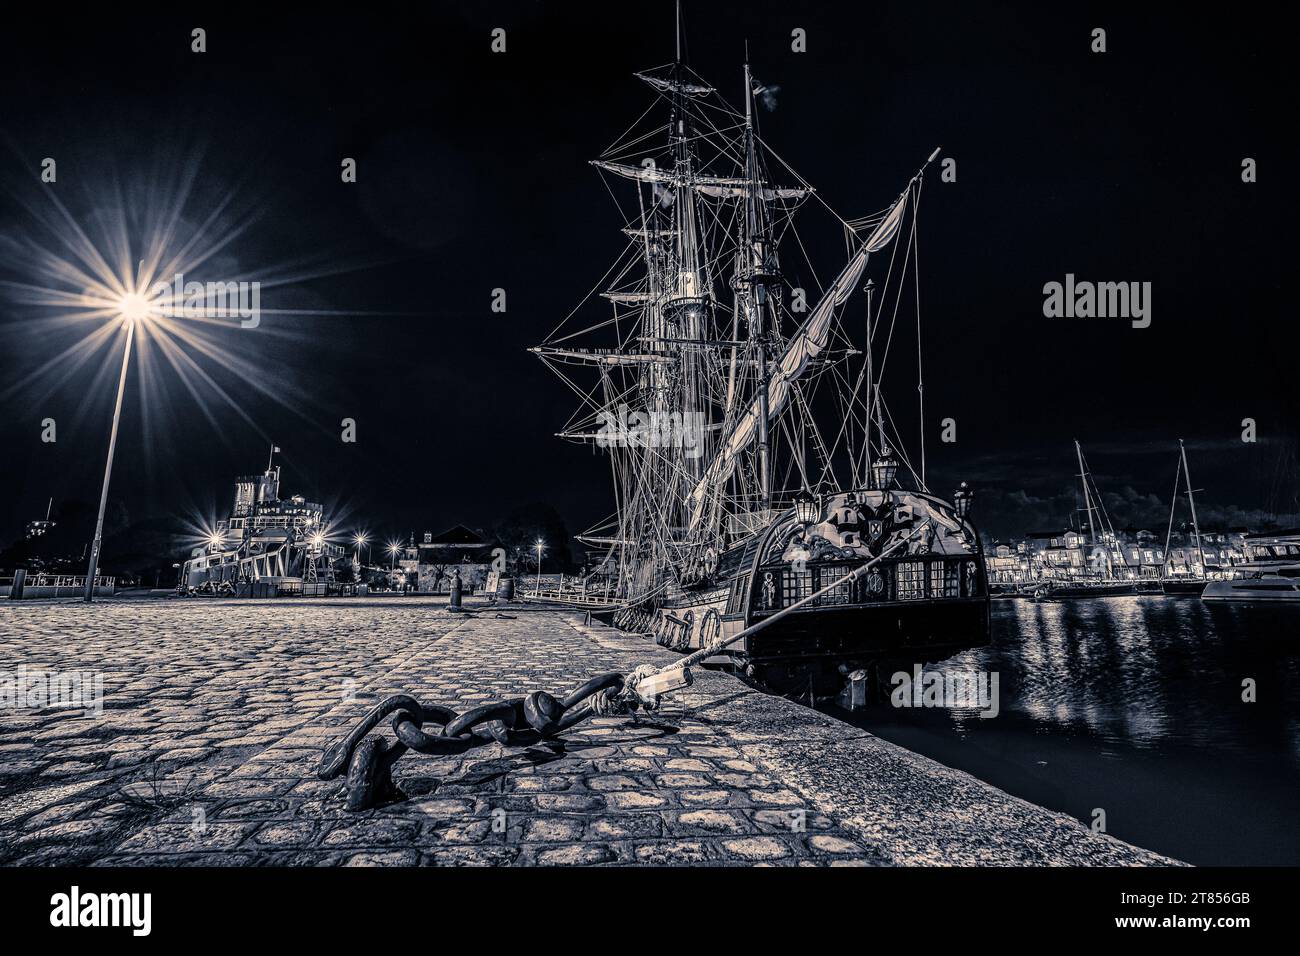 Vecchia nave a vela in legno ormeggiata nel porto di la Rochelle vicino al quartiere di gabut. ripresa notturna in bianco e nero Foto Stock